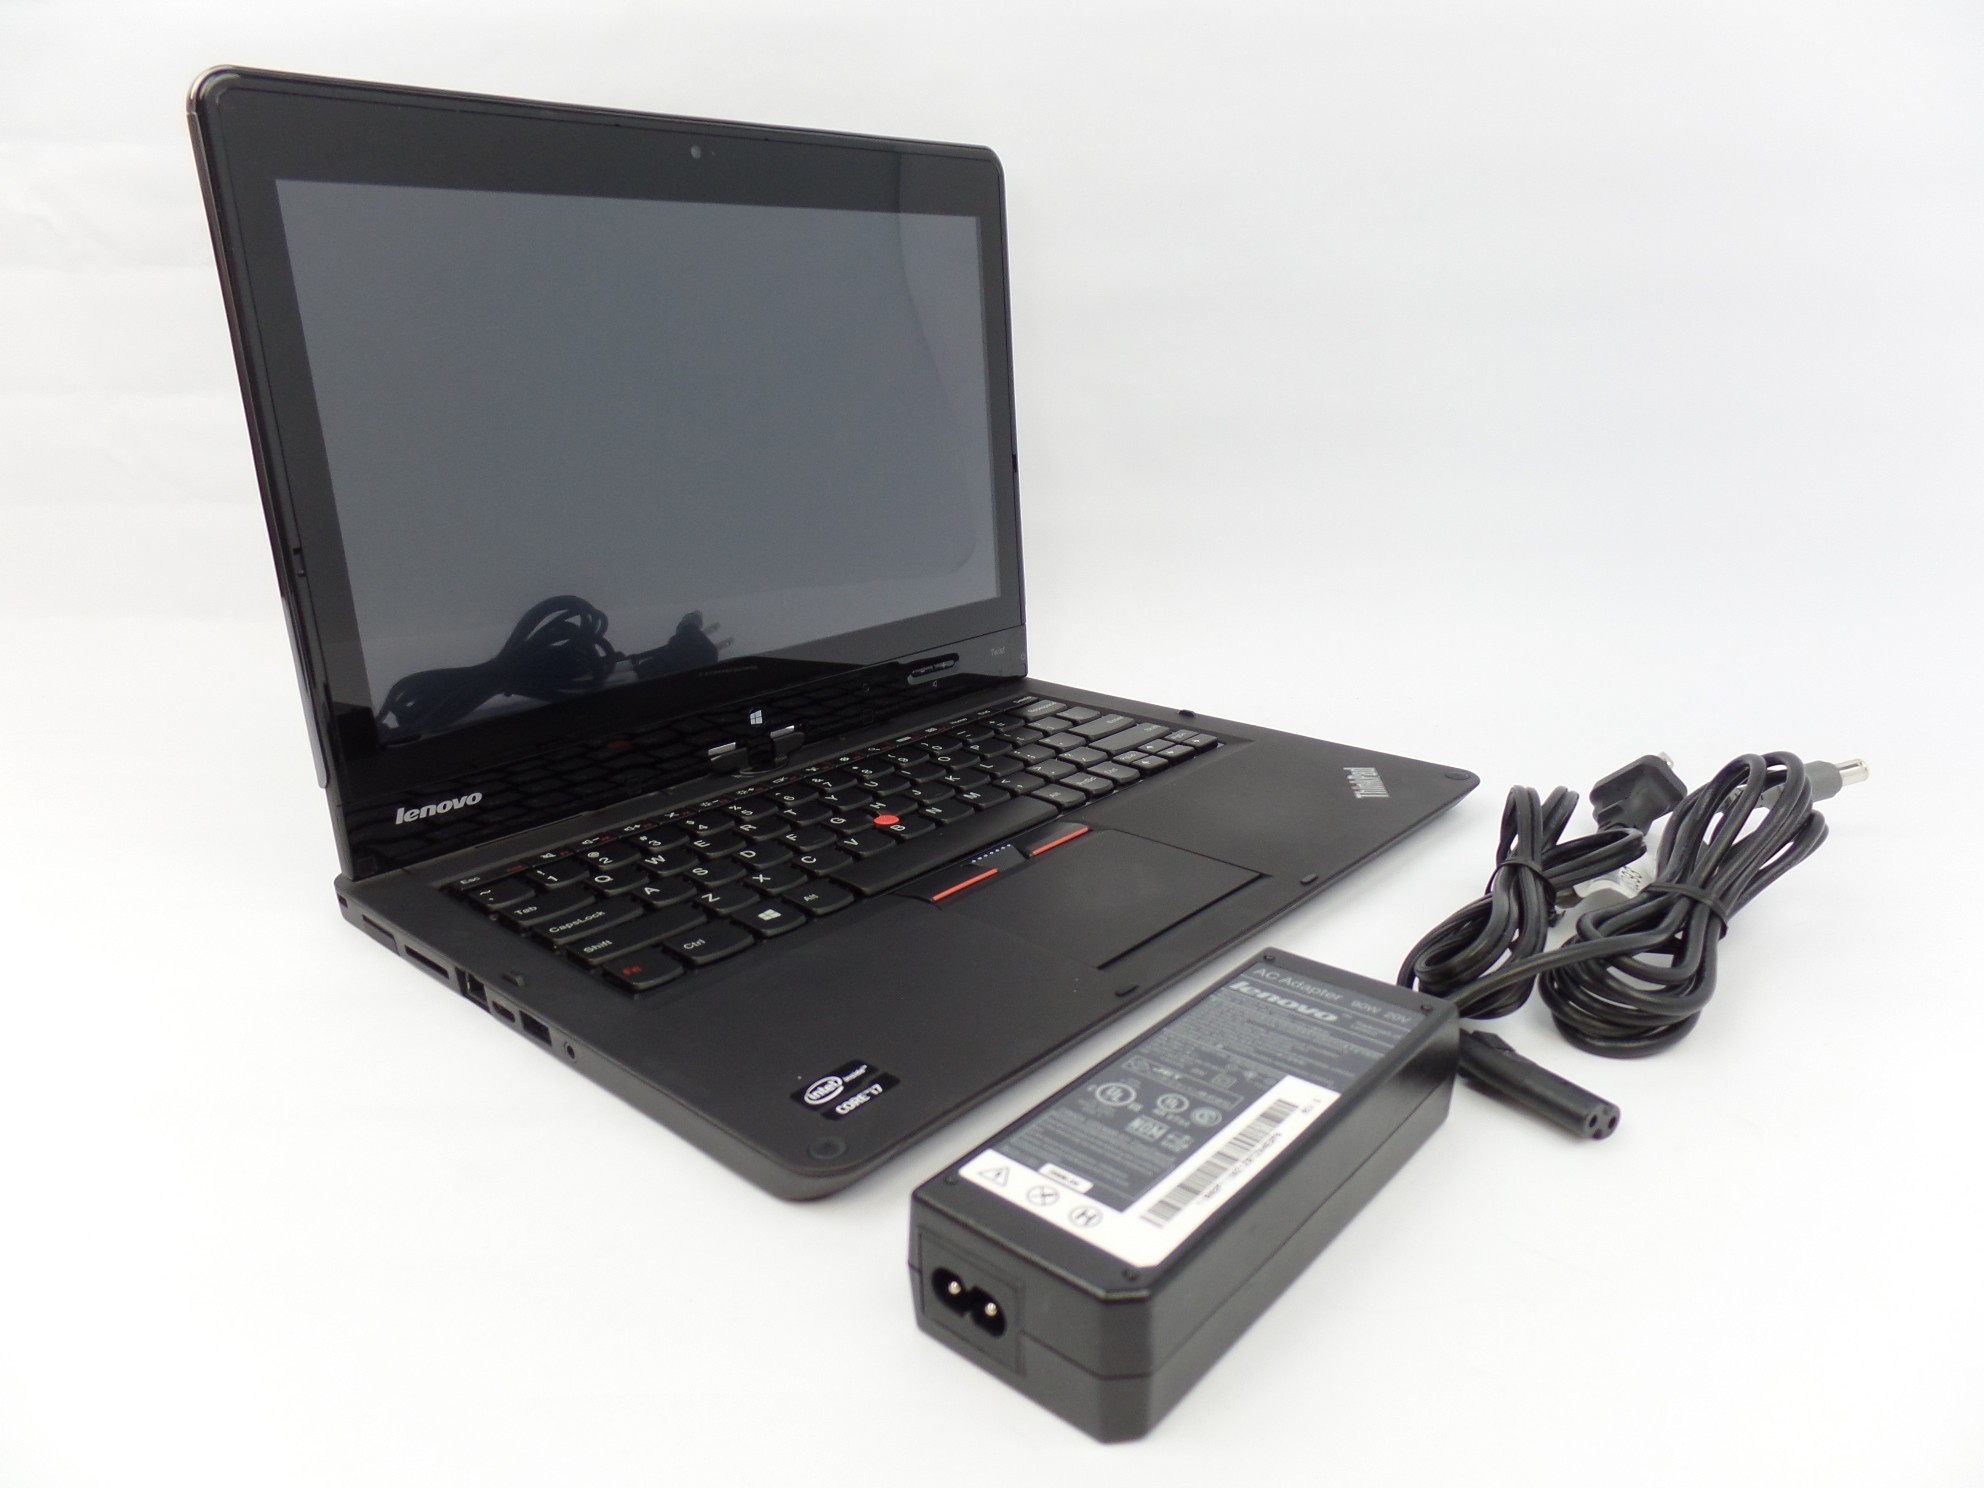 Lenovo ThinkPad Twist S230u 12.5" Touch i7-3537U 2GHz 8GB 128GB SSD W10P 33476LU